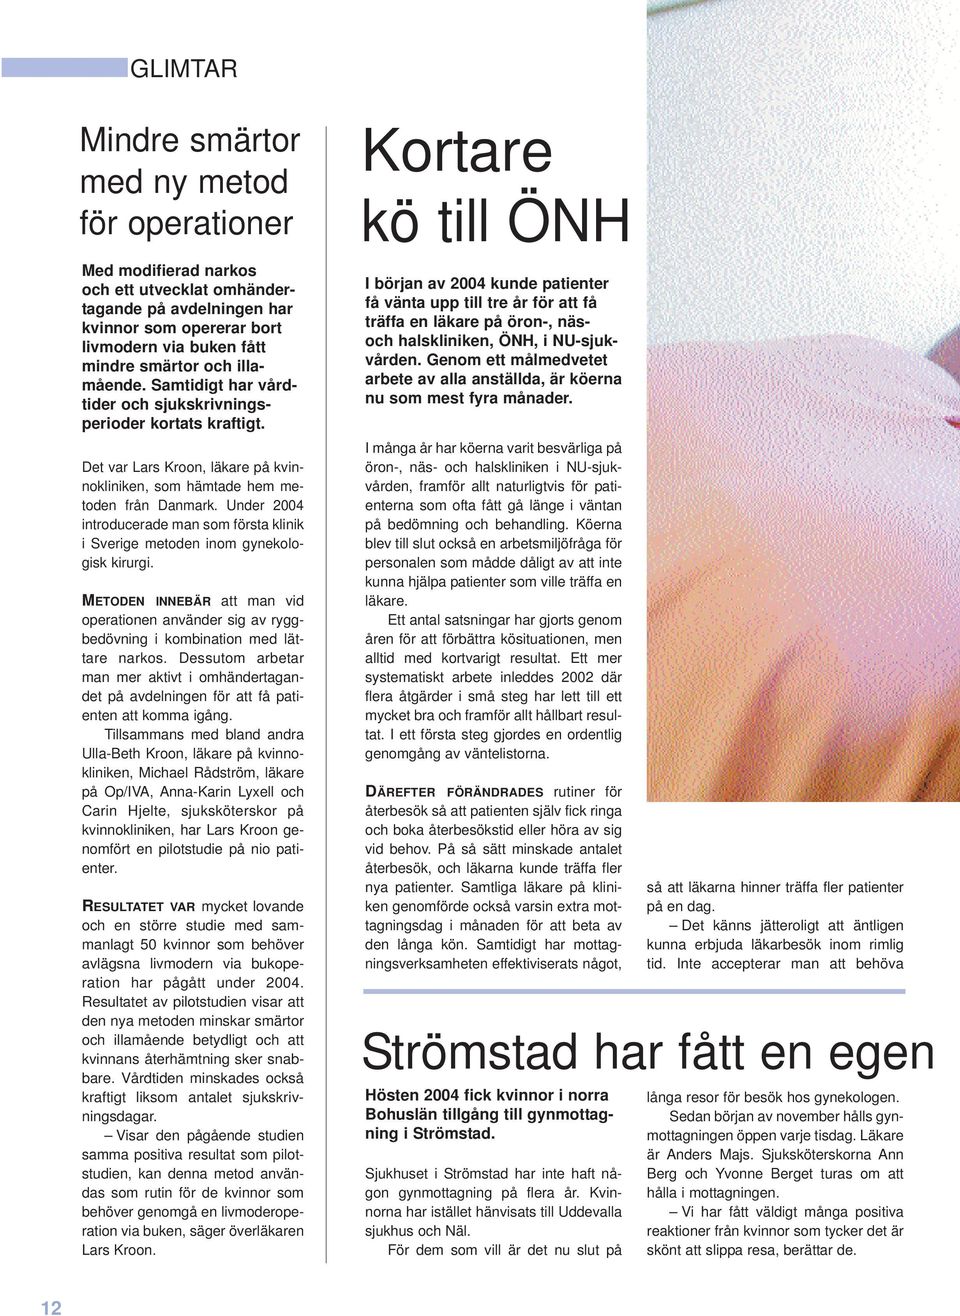 Under 2004 introducerade man som första klinik i Sverige metoden inom gynekologisk kirurgi. METODEN INNEBÄR att man vid operationen använder sig av ryggbedövning i kombination med lättare narkos.